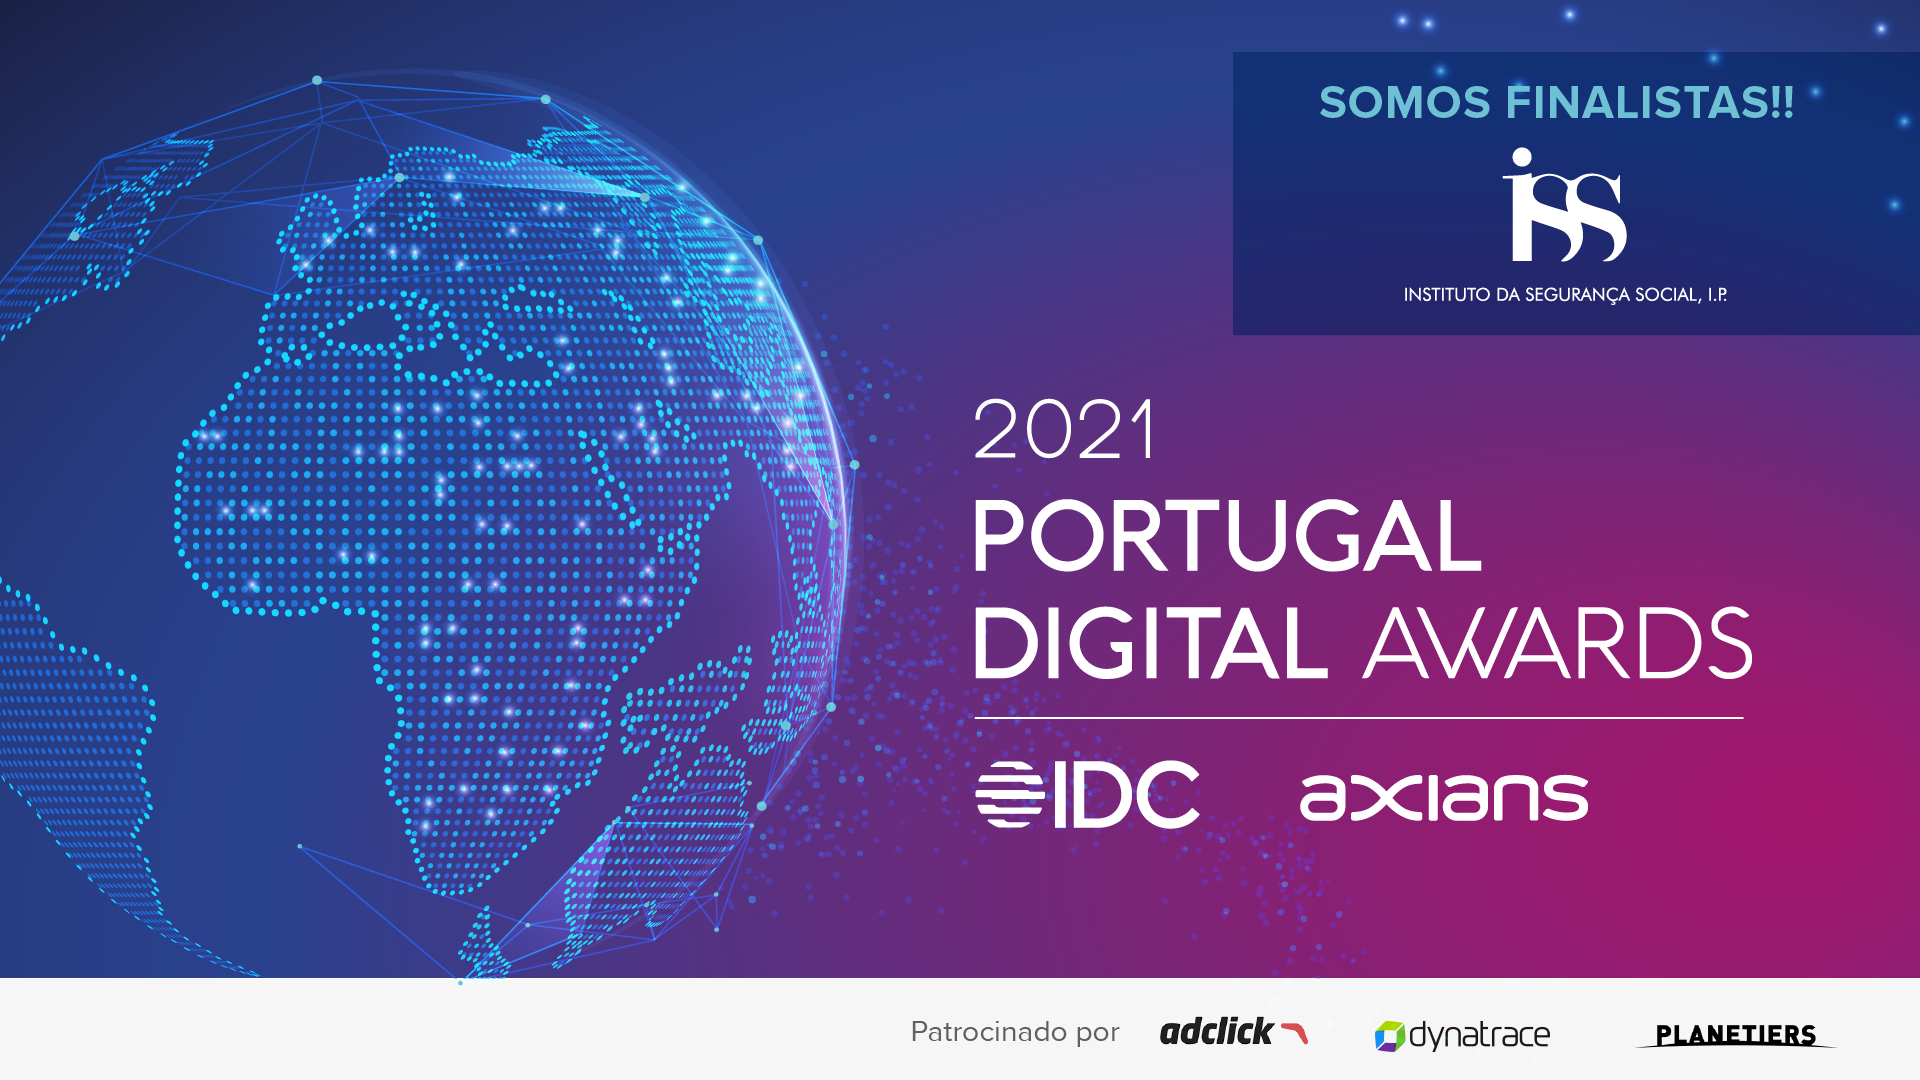 Instituto da Segurança Social finalista dos Portugal Digital Awards 2021